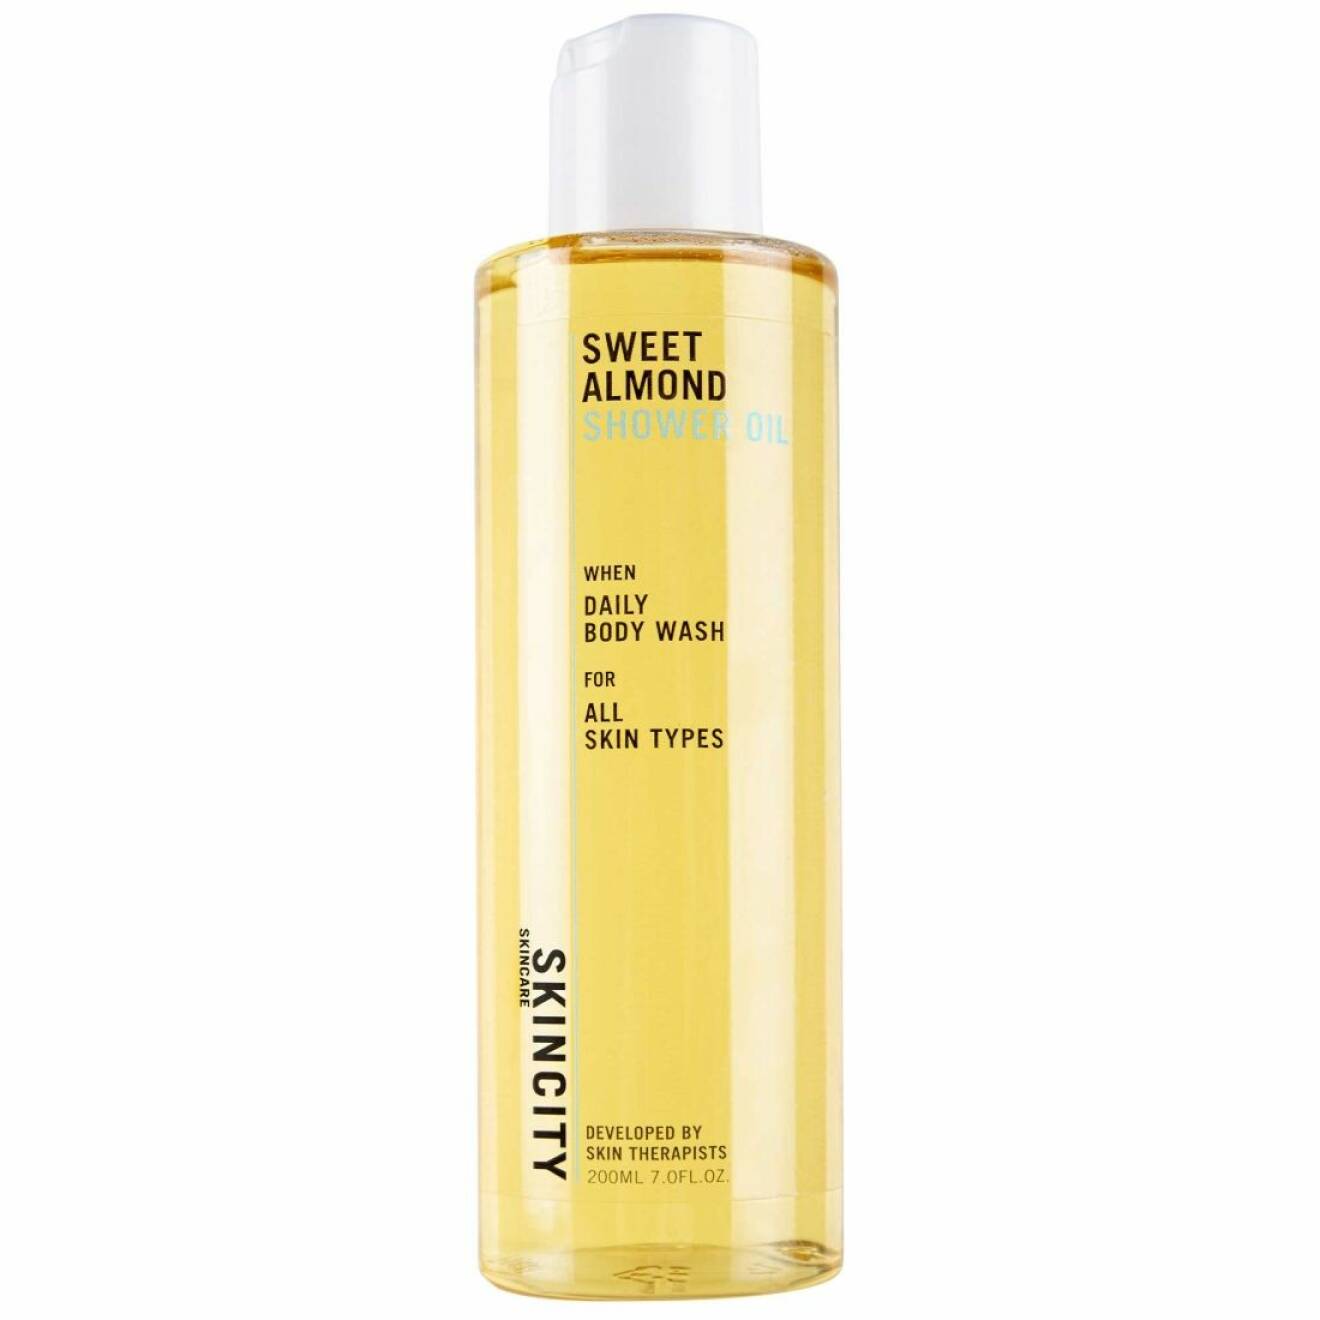 Duscholjan Sweet almond shower oil från Skincity håller hela kroppen återfuktad.